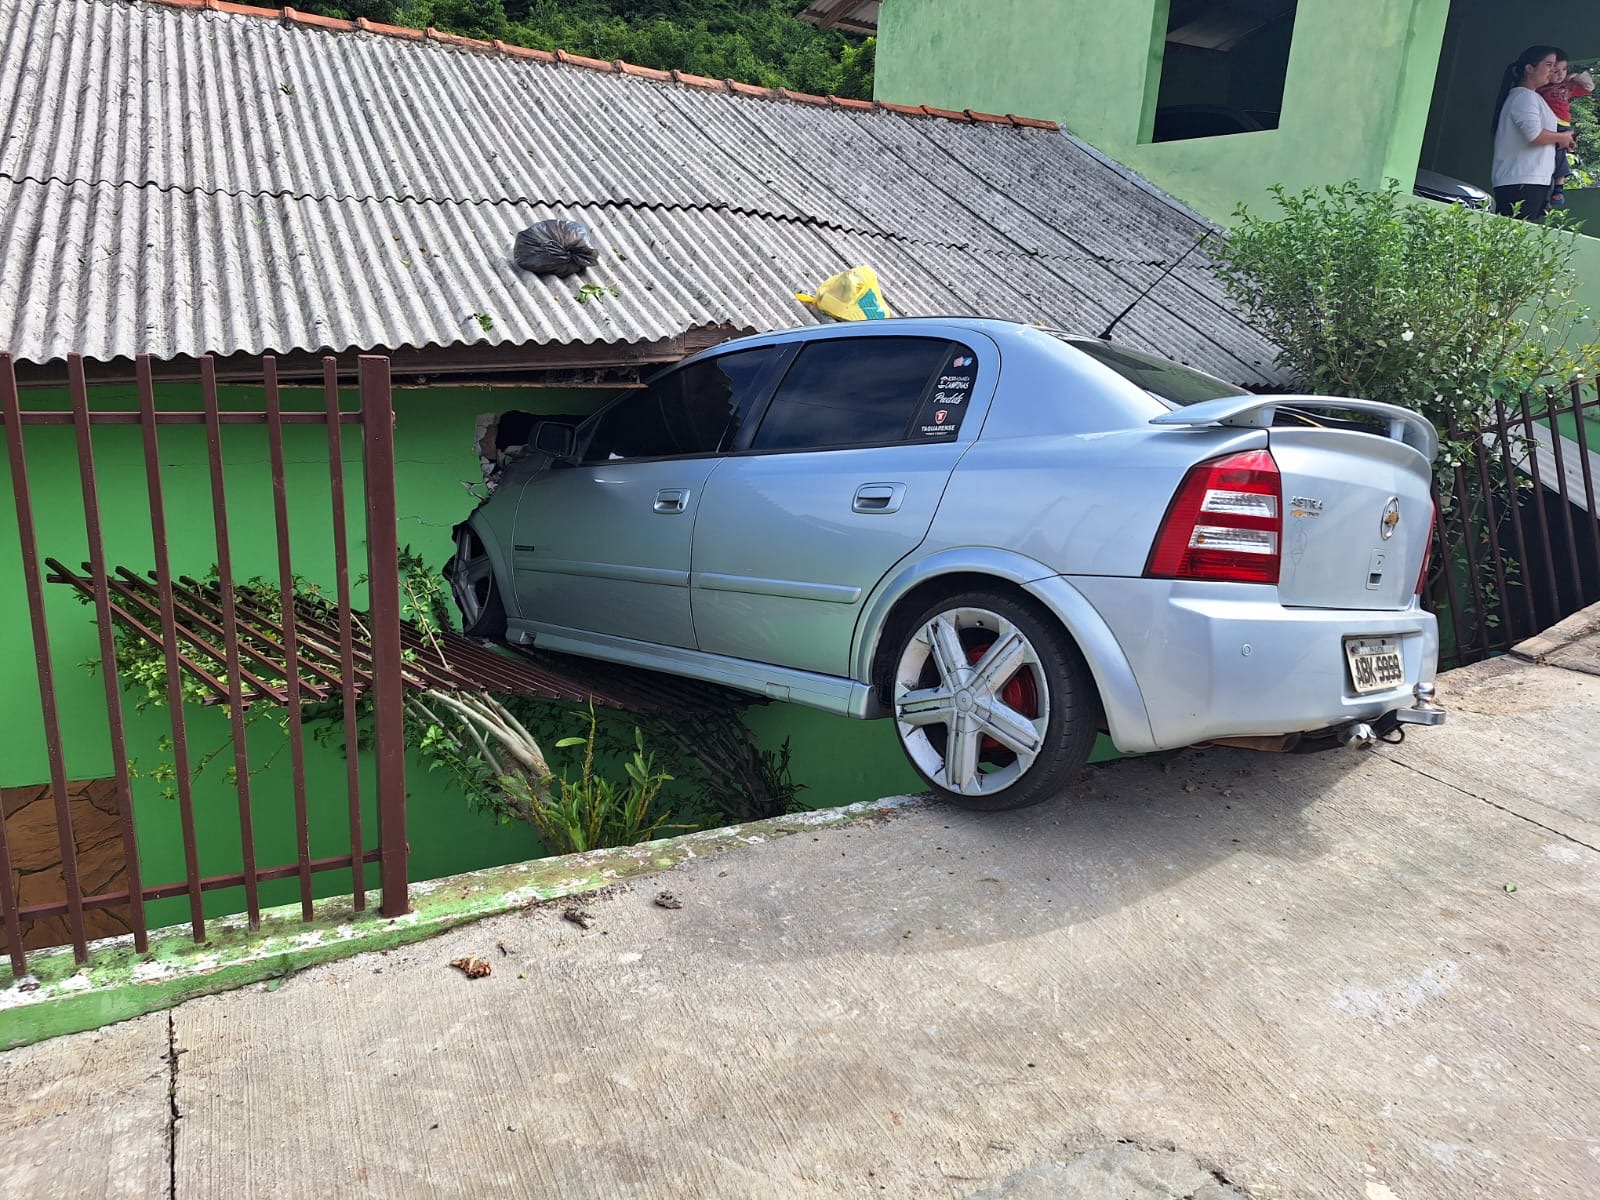 Carro invade residência em bairro de Carambeí